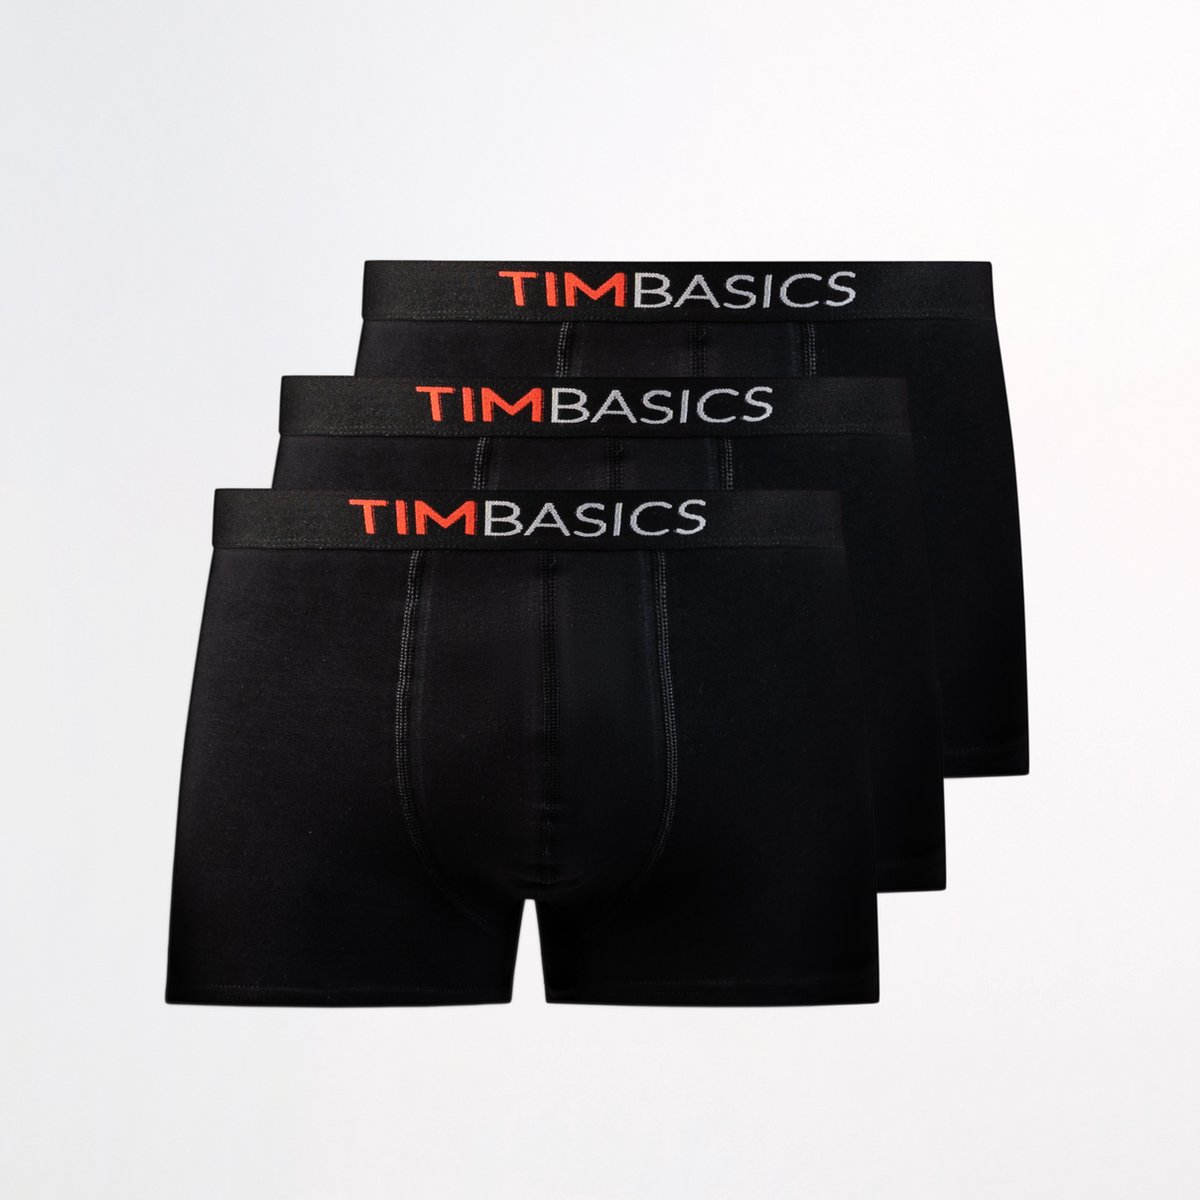 TimBasics - Heren boxershorts 3 pack - Zwart – XL - Heren ondergoed